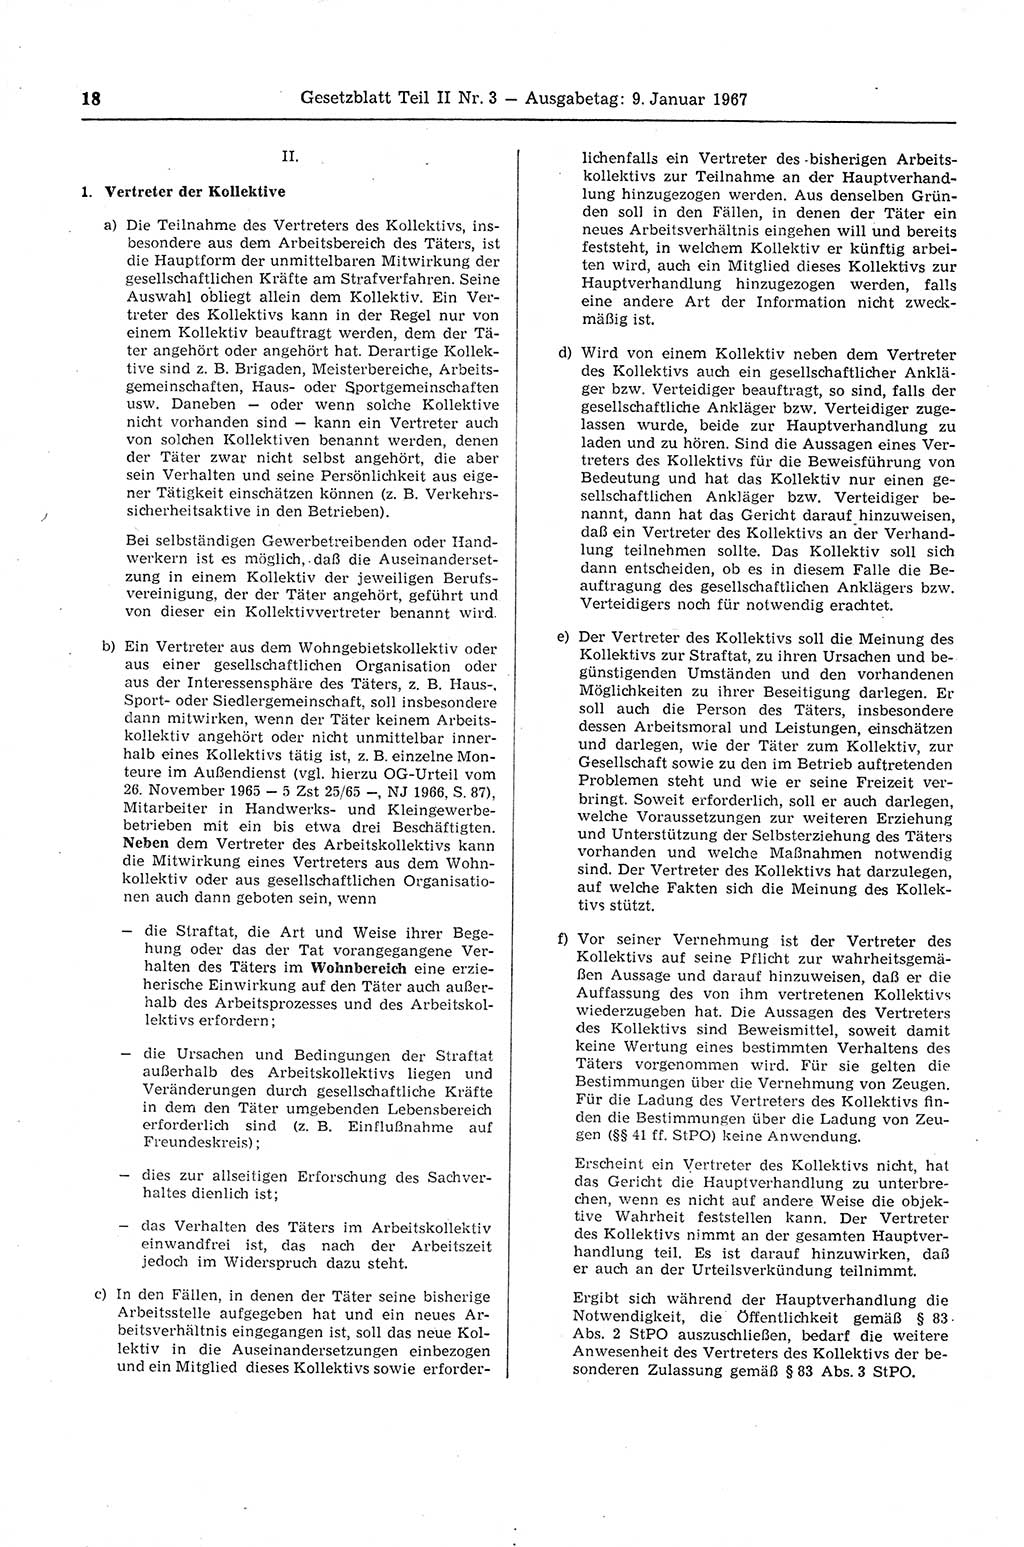 Gesetzblatt (GBl.) der Deutschen Demokratischen Republik (DDR) Teil ⅠⅠ 1967, Seite 18 (GBl. DDR ⅠⅠ 1967, S. 18)